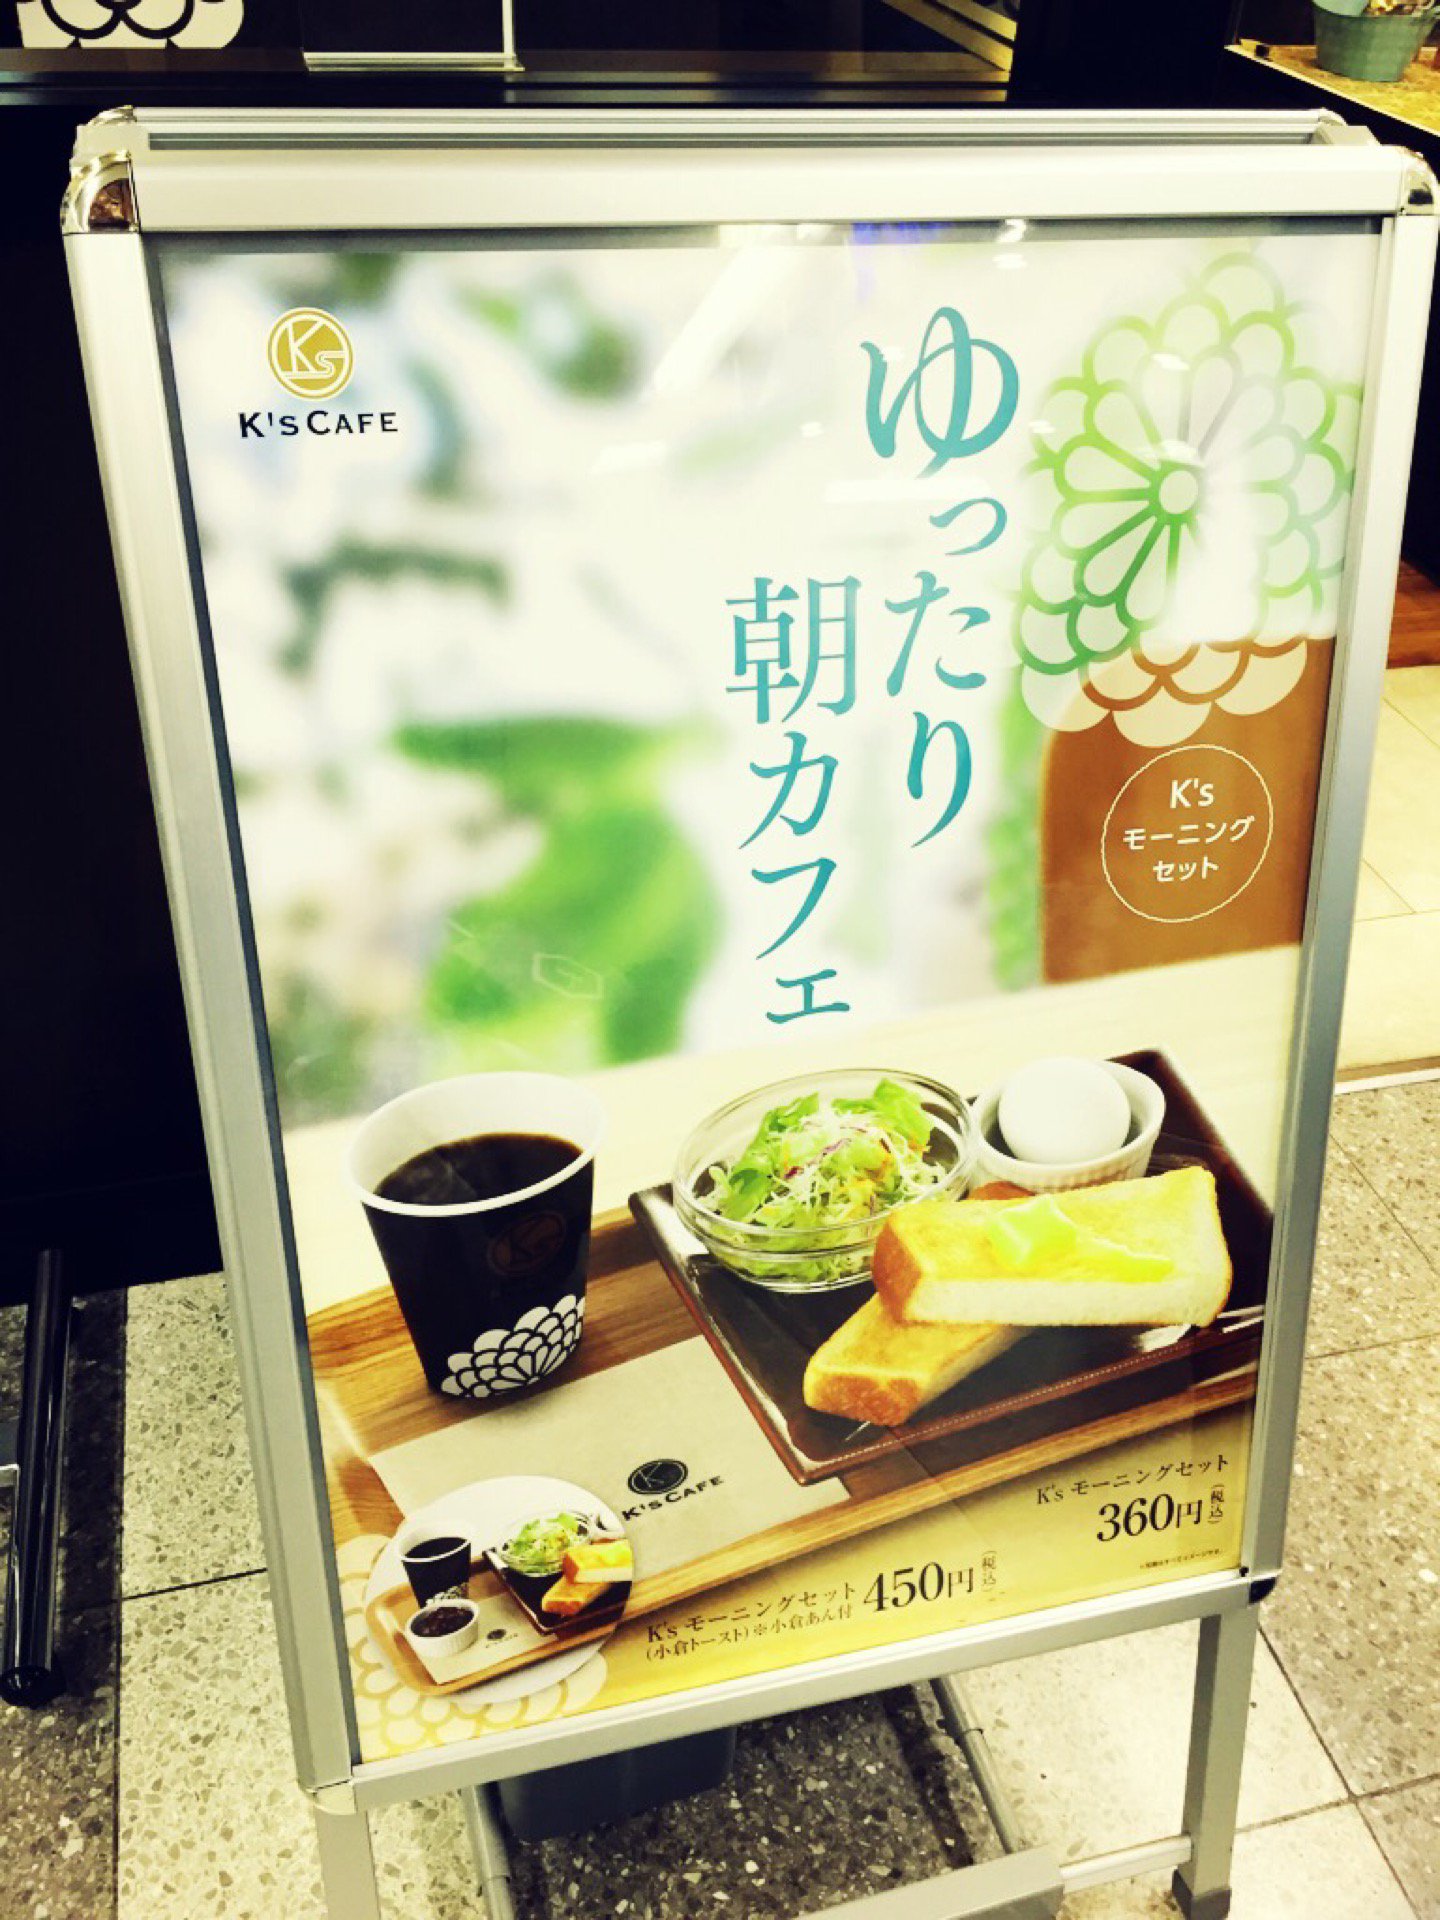 ゆったり朝カフェ メニュー (@ K's CAFE 名古屋空港 in 豊山町, 愛知県)  